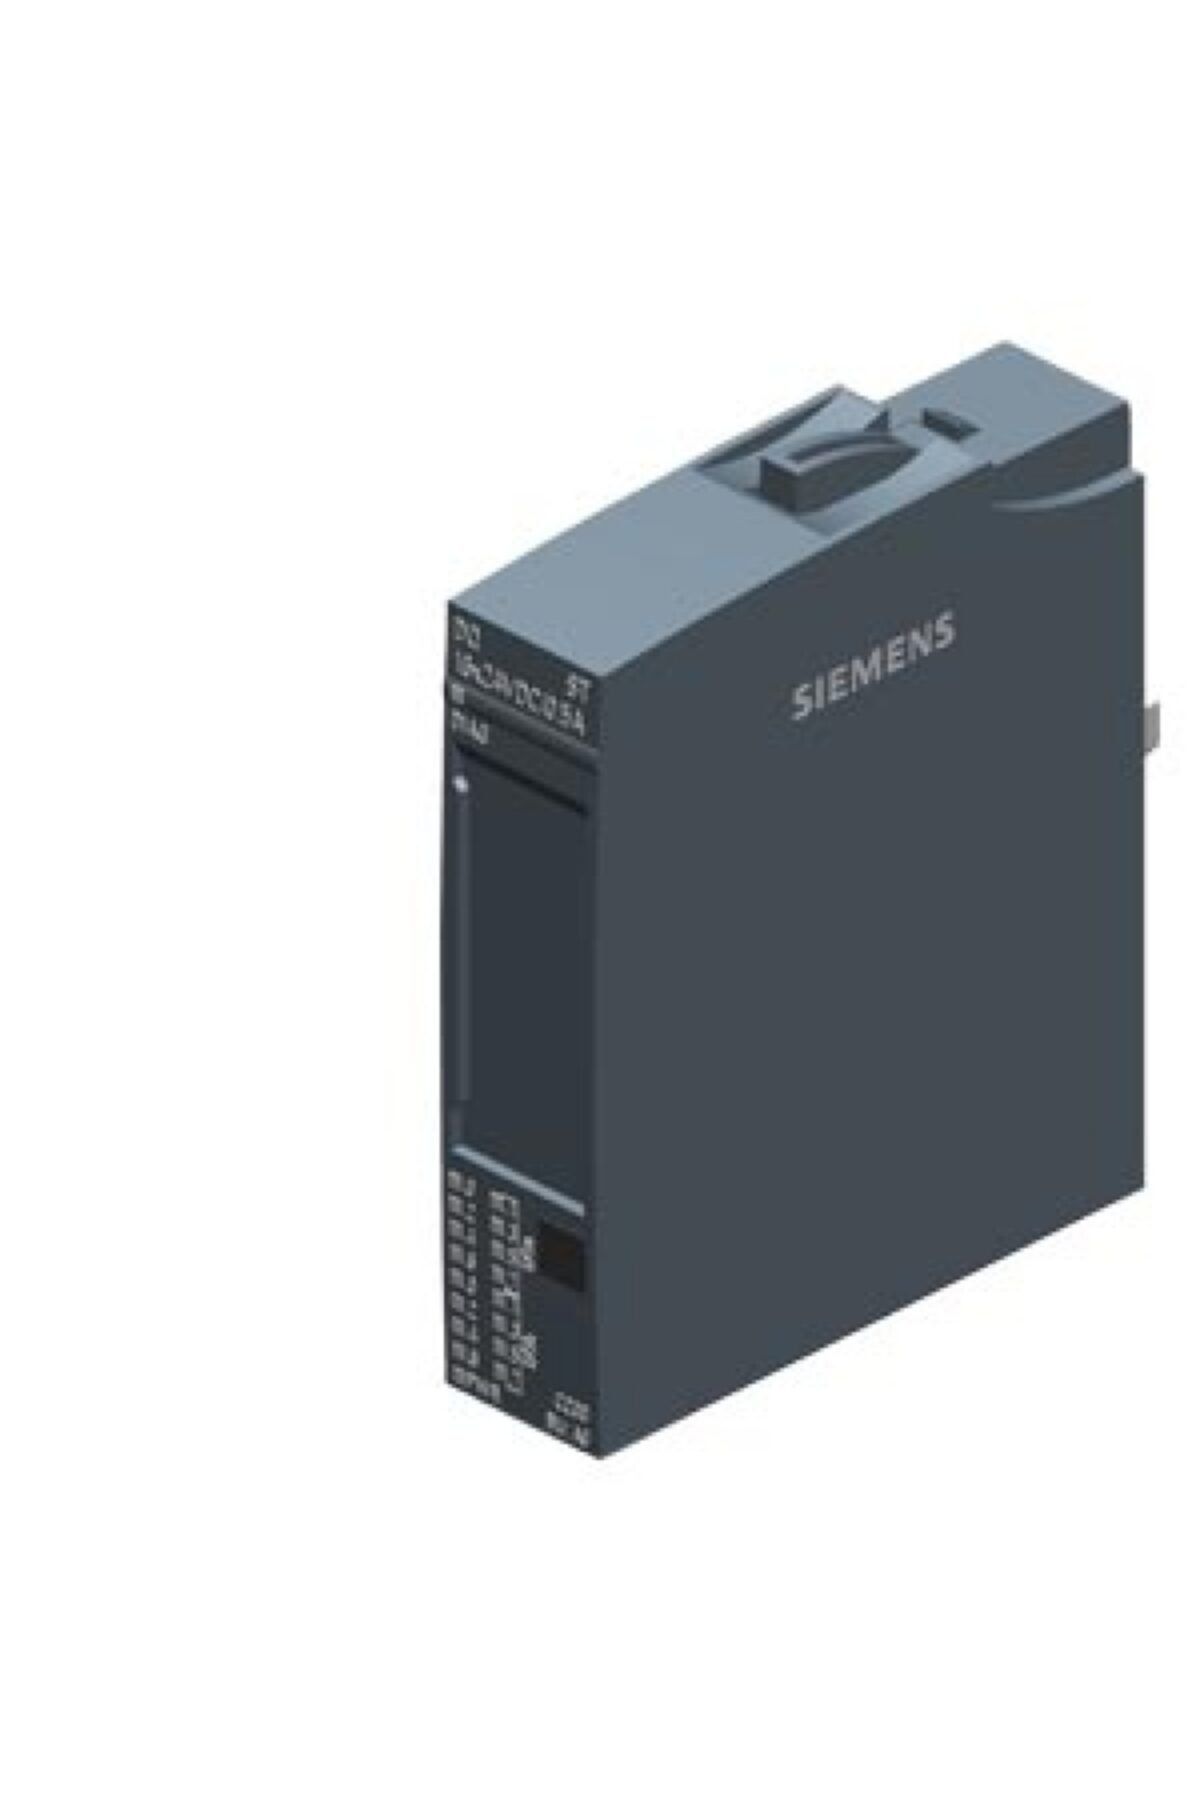 Siemens 6es7132-6bh01-0ba0 Et 200sp Dq Modül 16x24vdc/0.5a